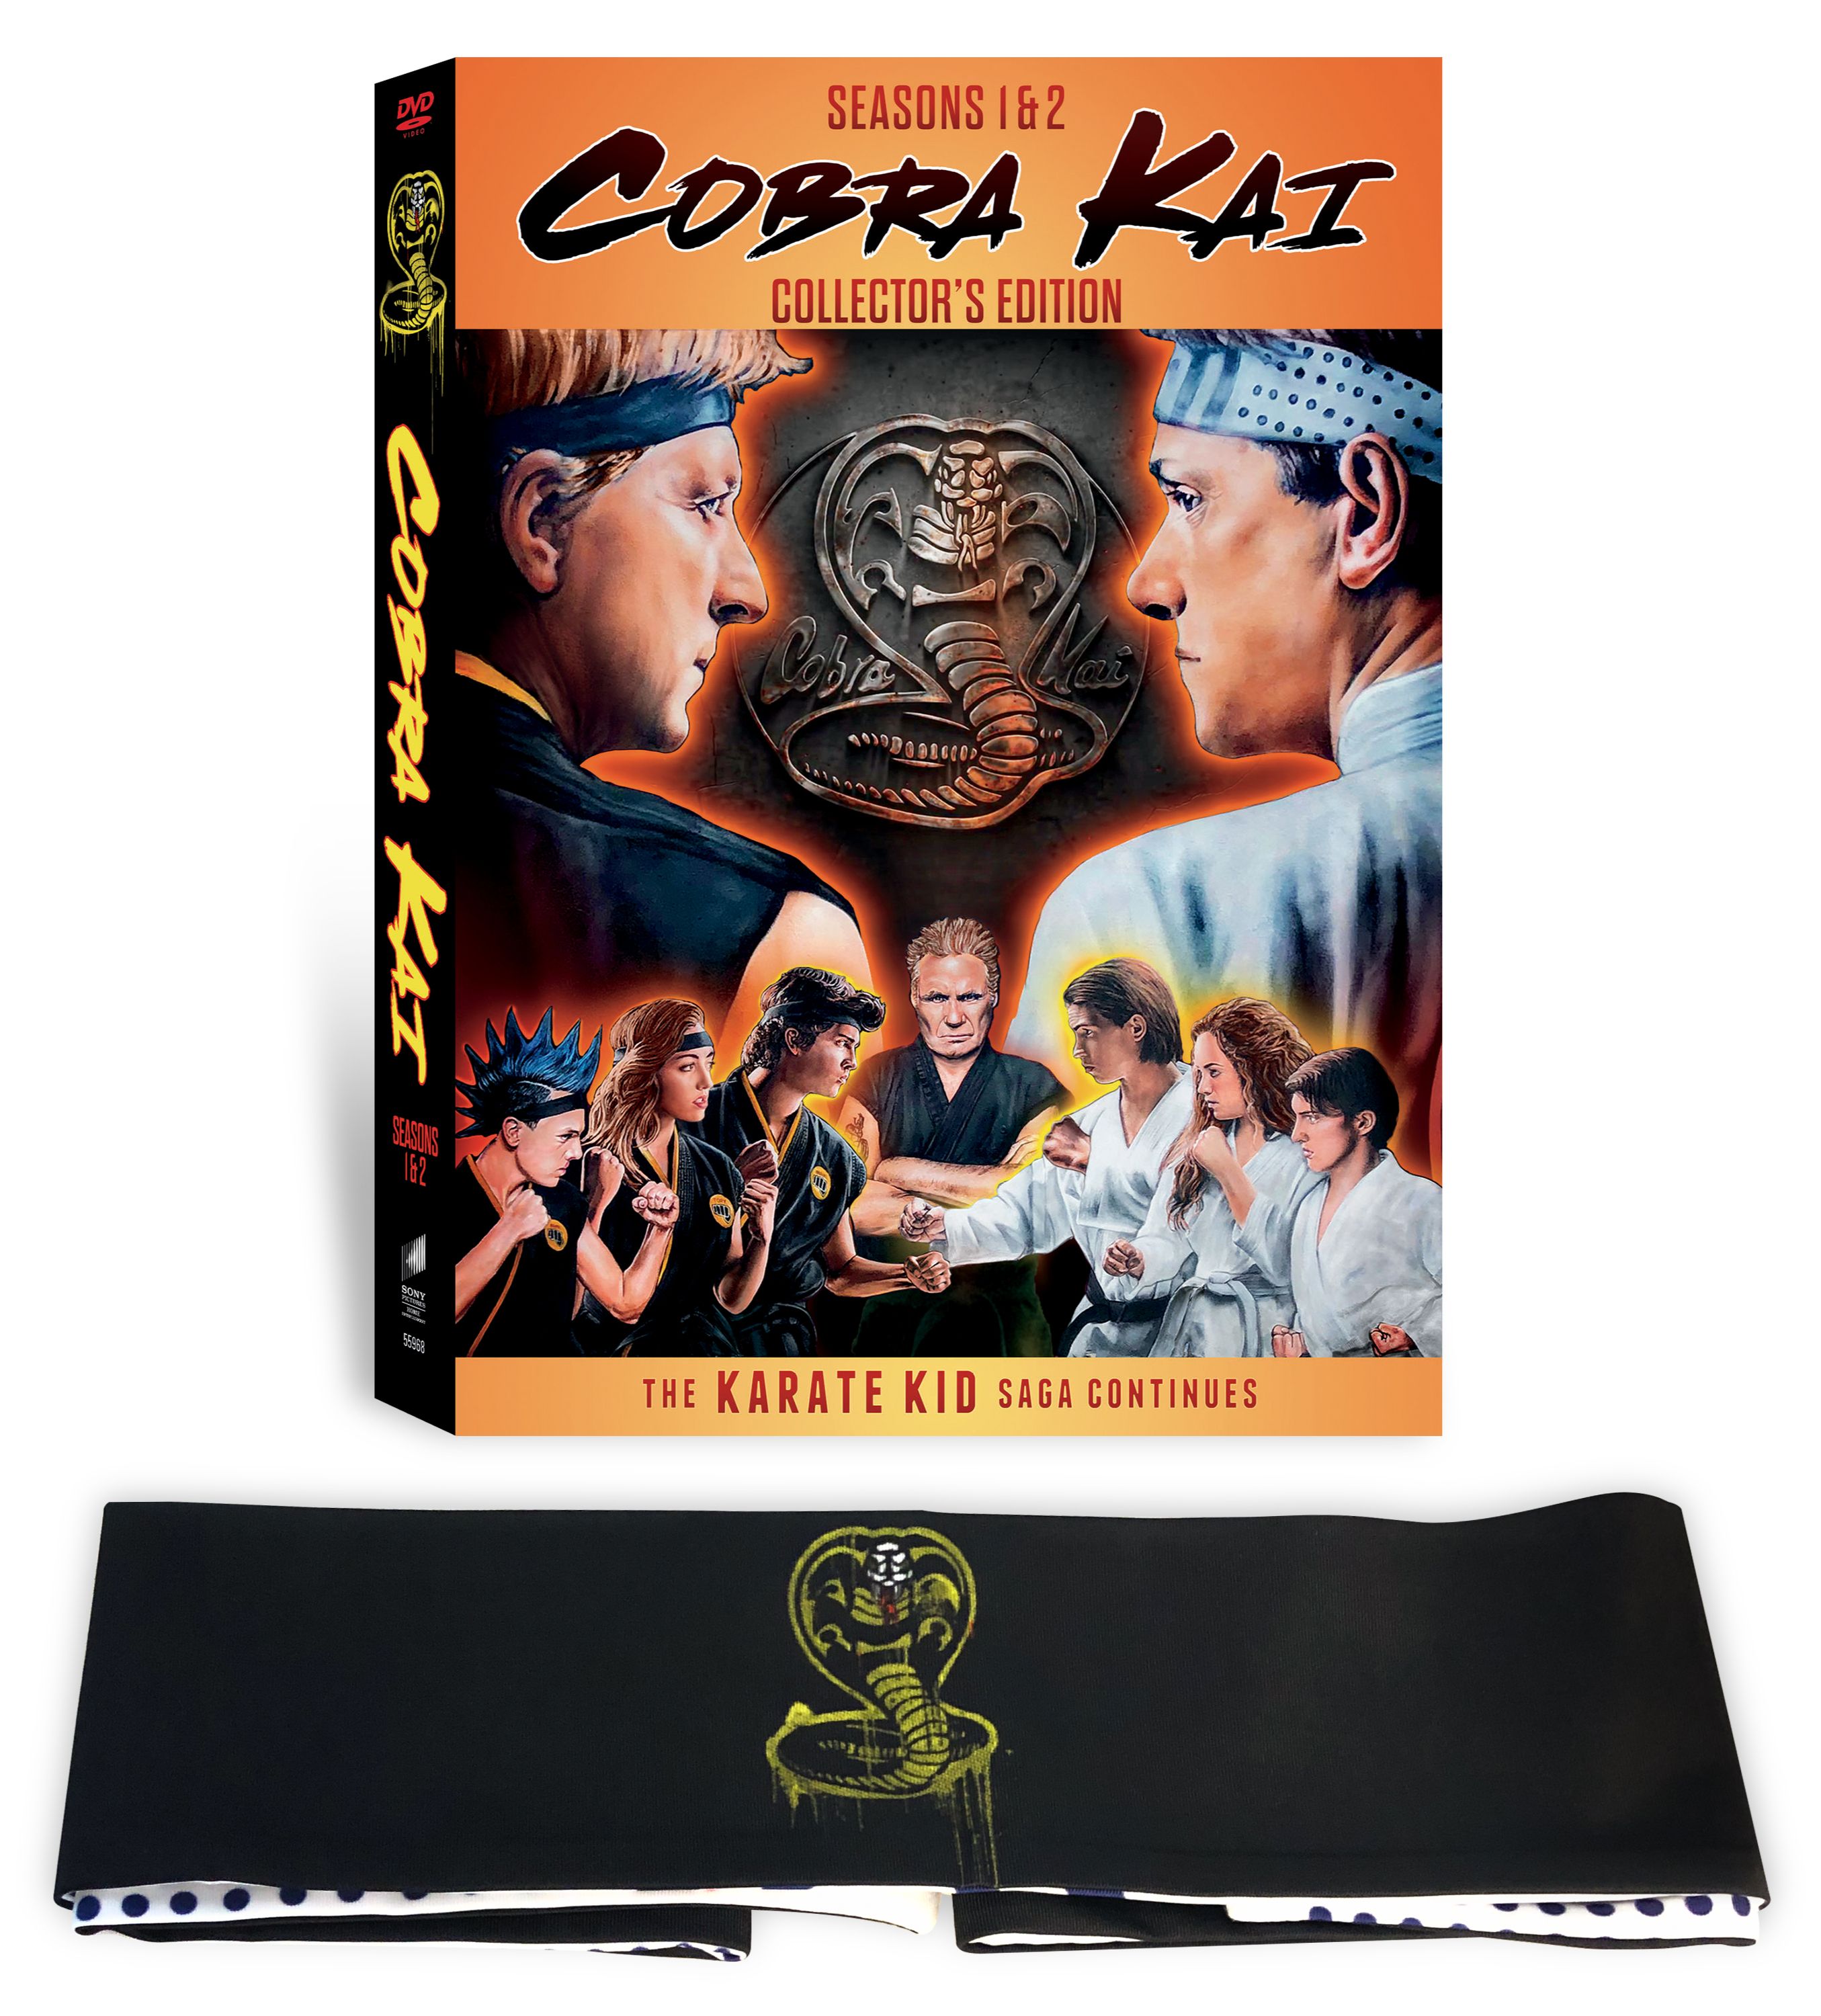 Cobra Kai DVD Season 1, Season 2